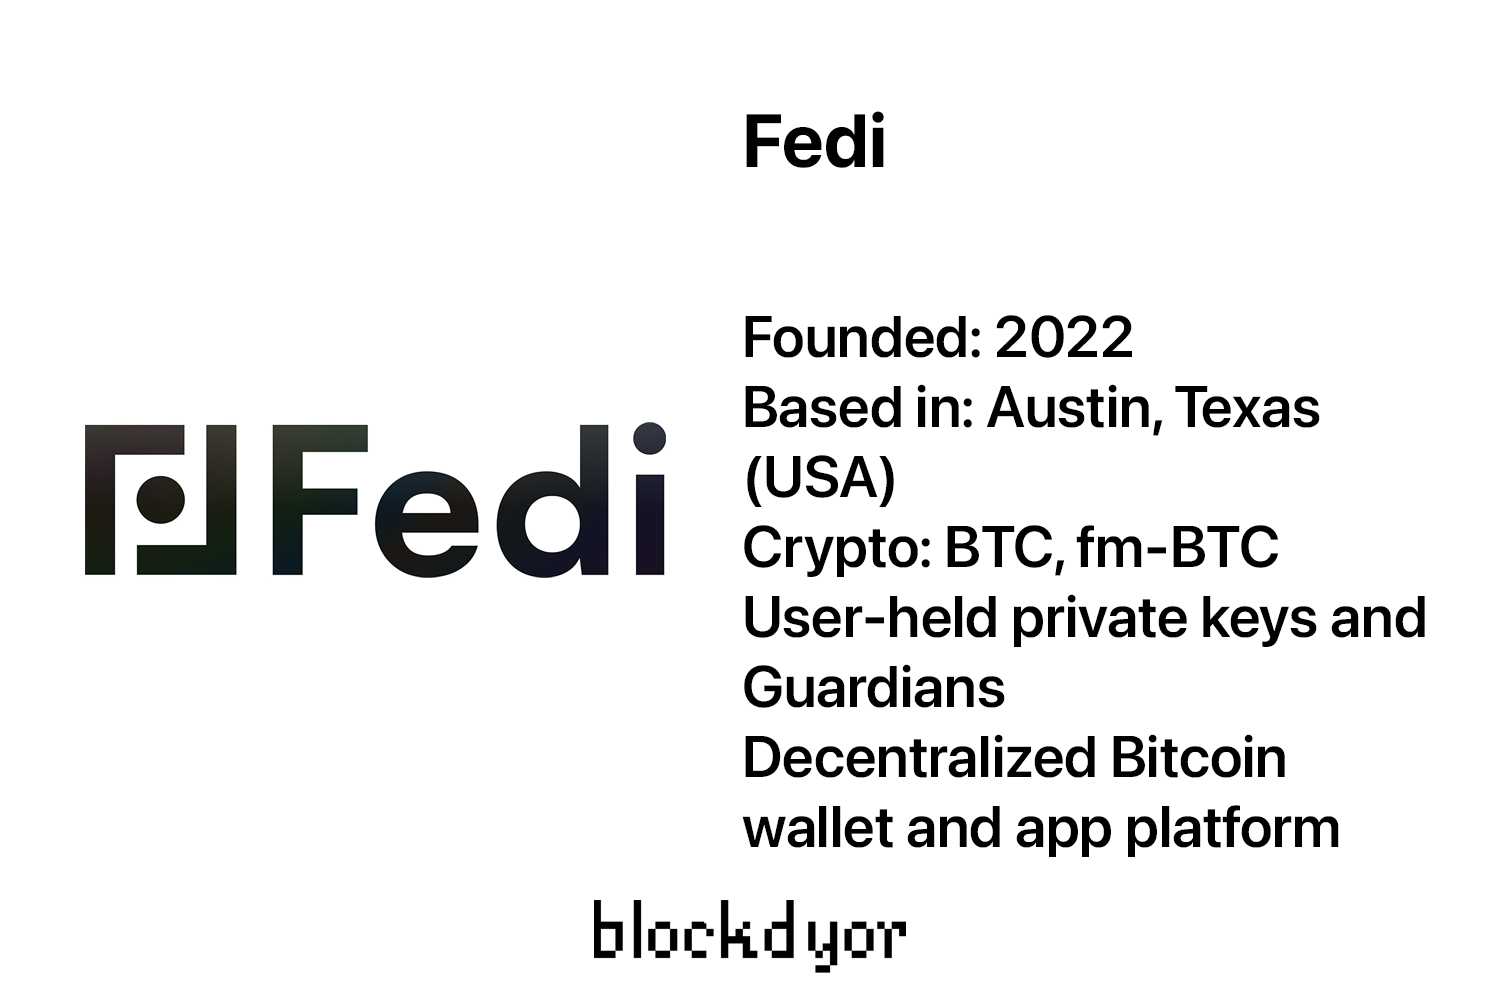 Fedi Overview